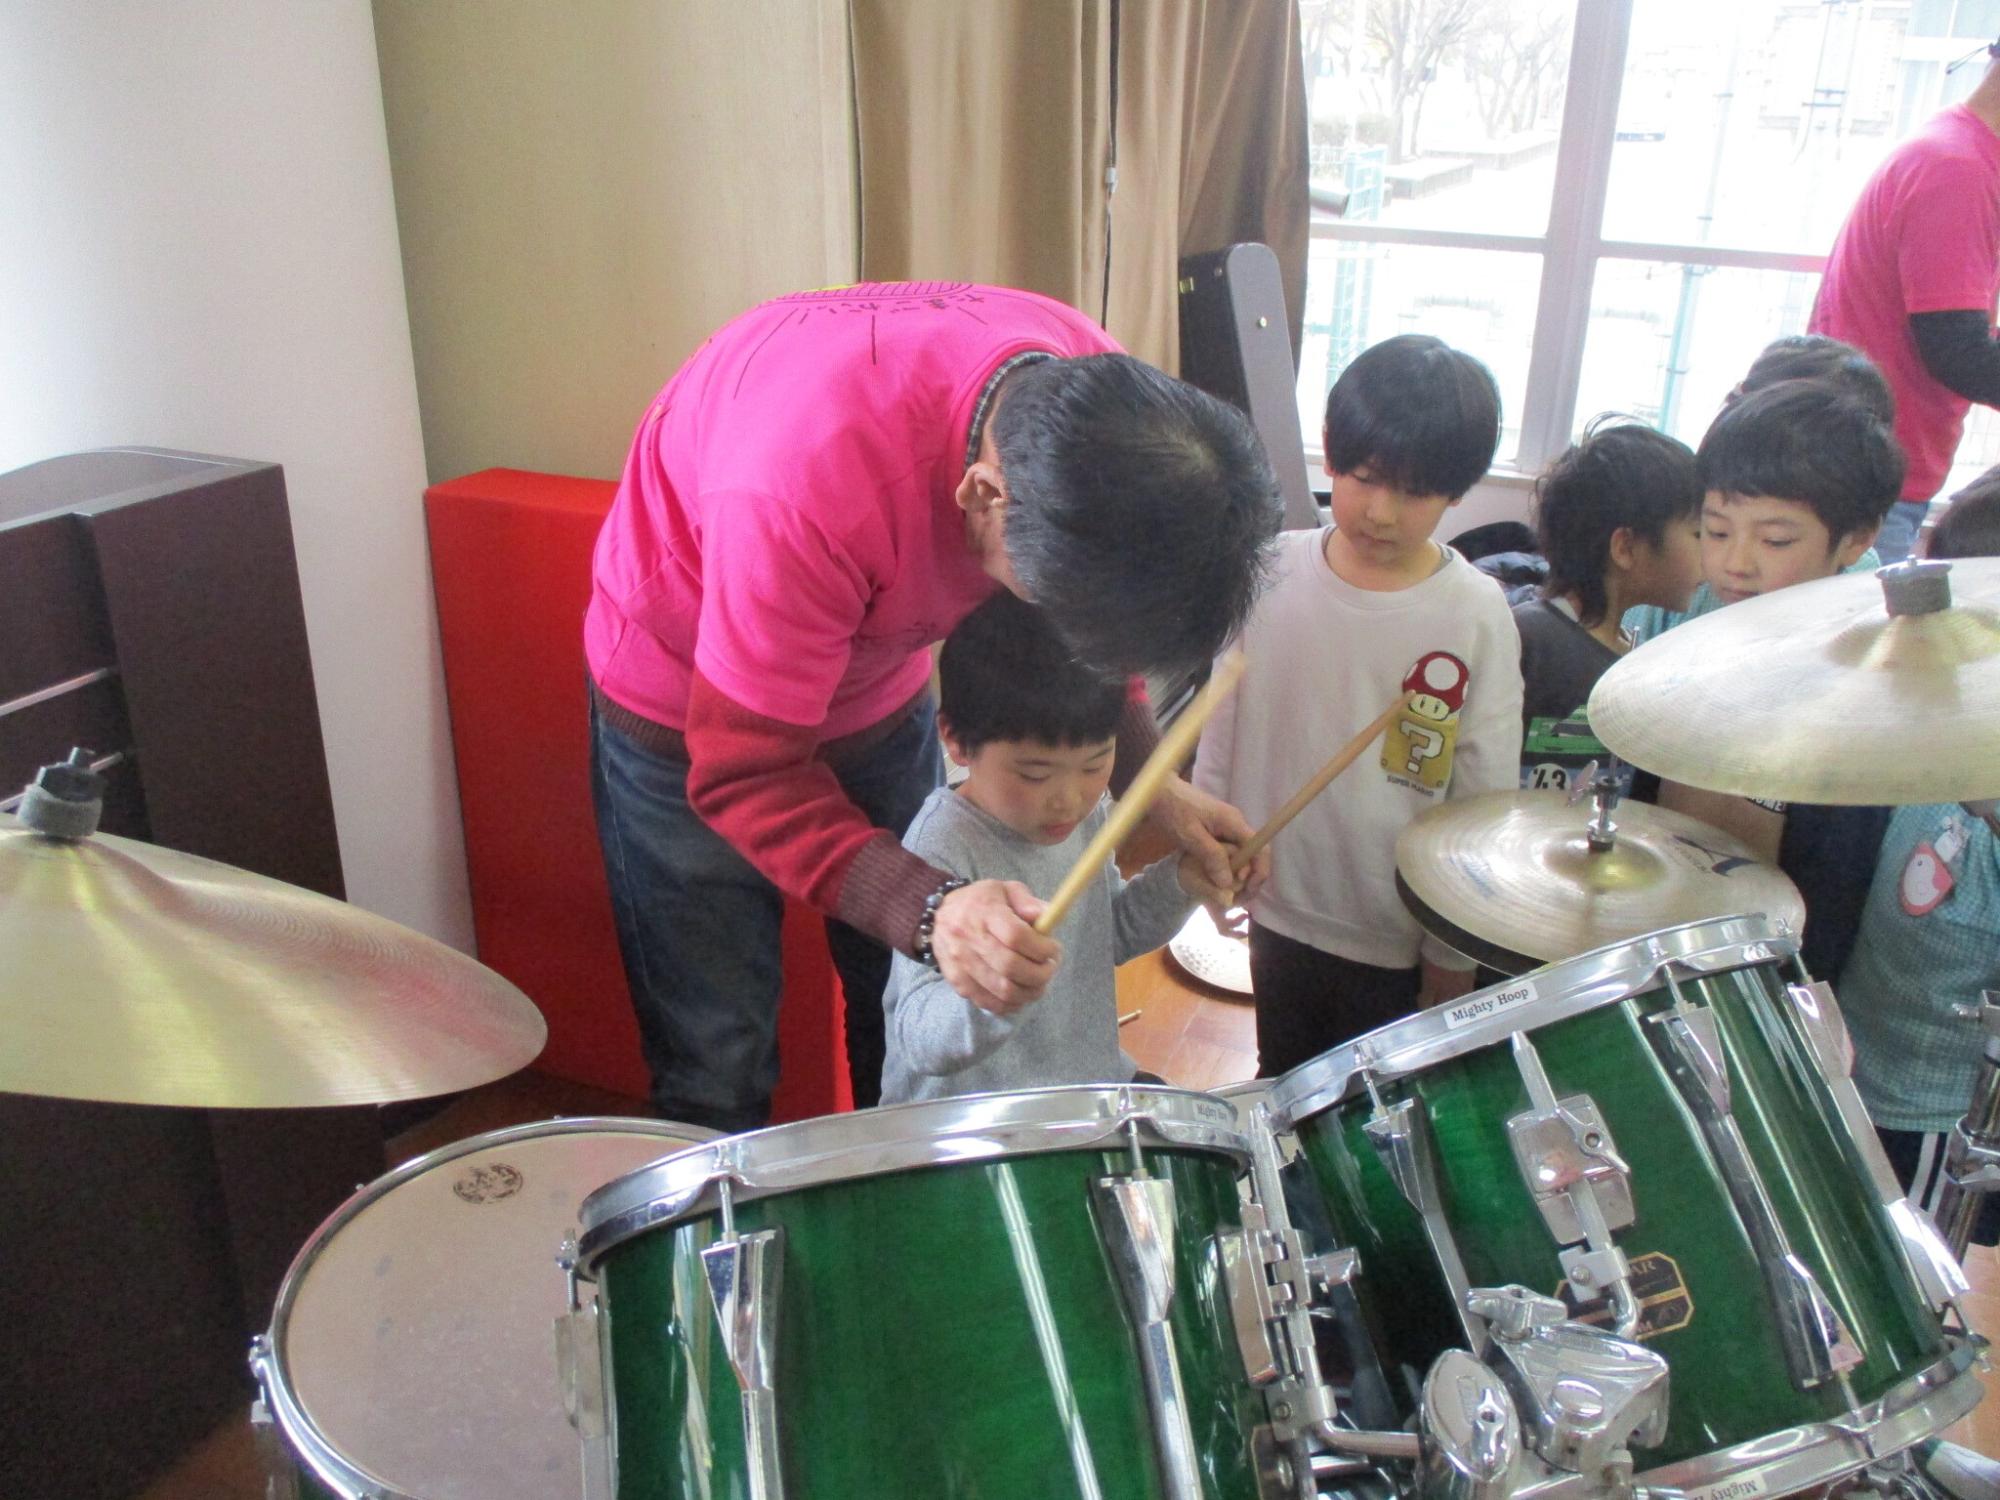 ドラムを教えてもらいながら演奏する幼児